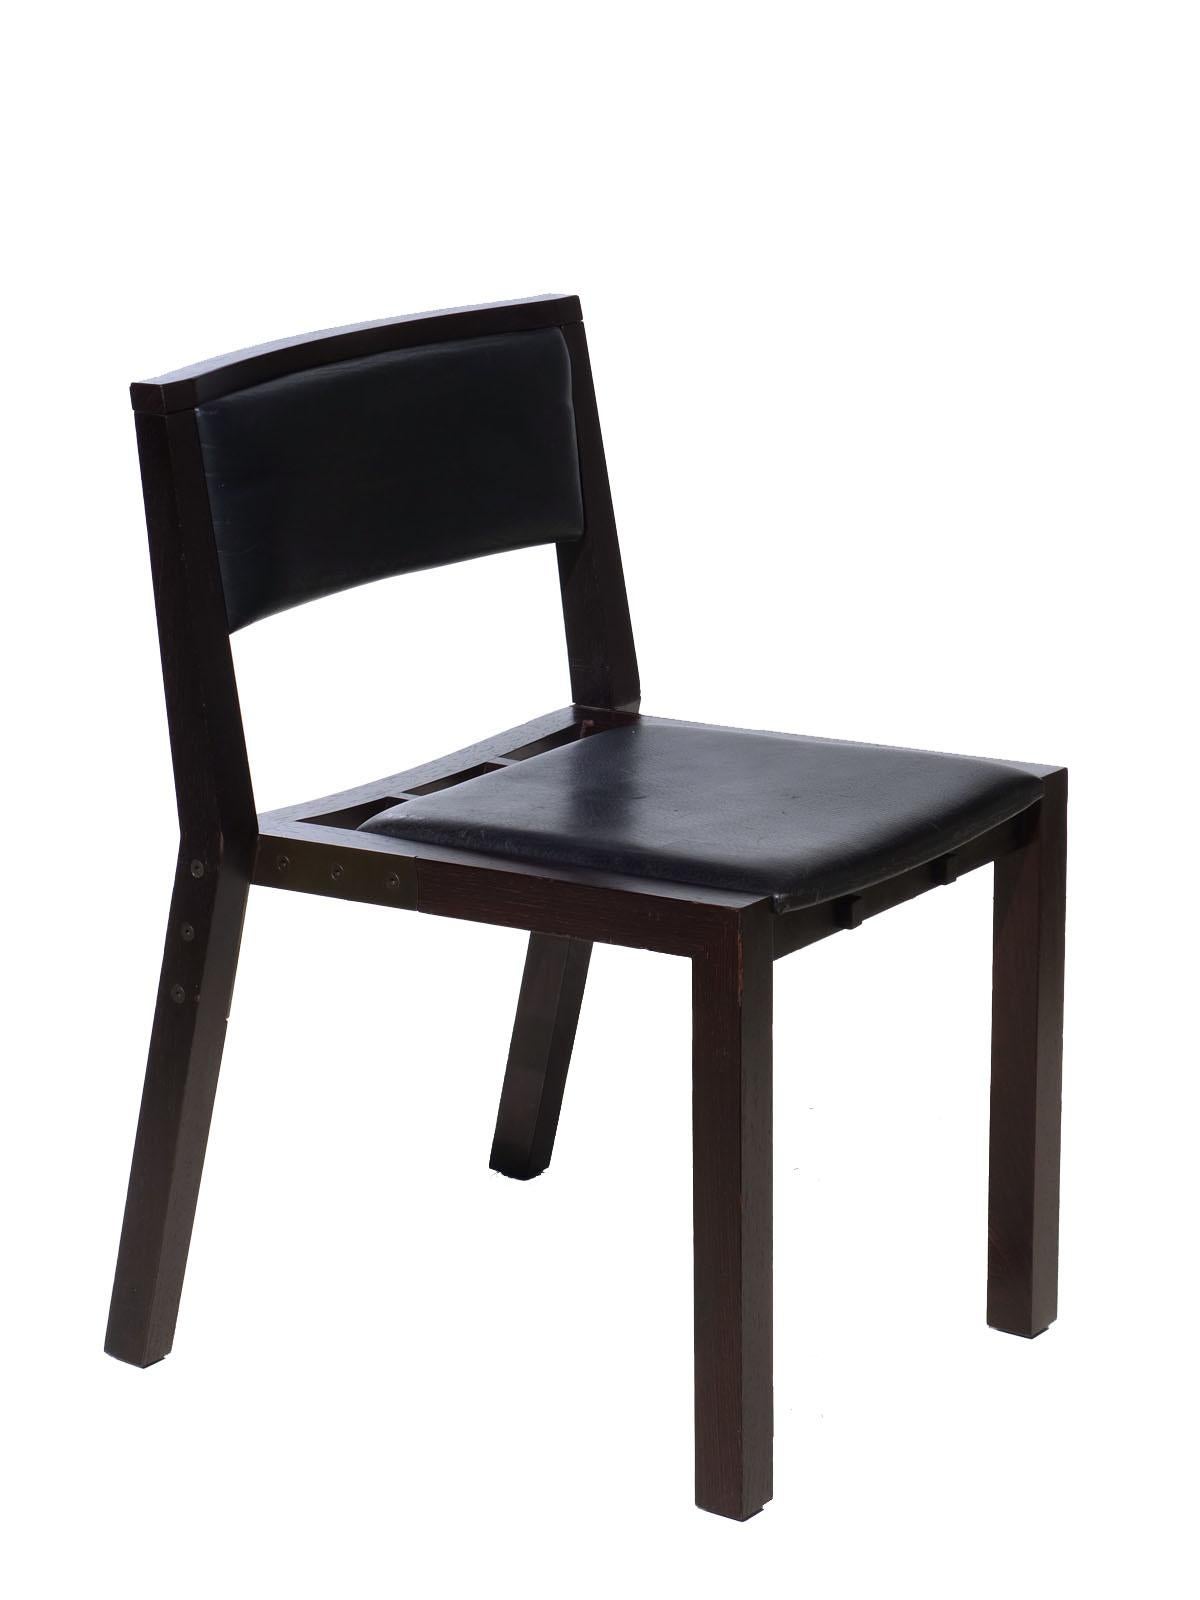 Bois, laiton chromé et cuir noir. Une belle forme architecturale avec des détails intéressants. 
Ce prototype de chaise fait partie d'une commande créée comme siège public pour l'aile Rizhelien du Louvre.